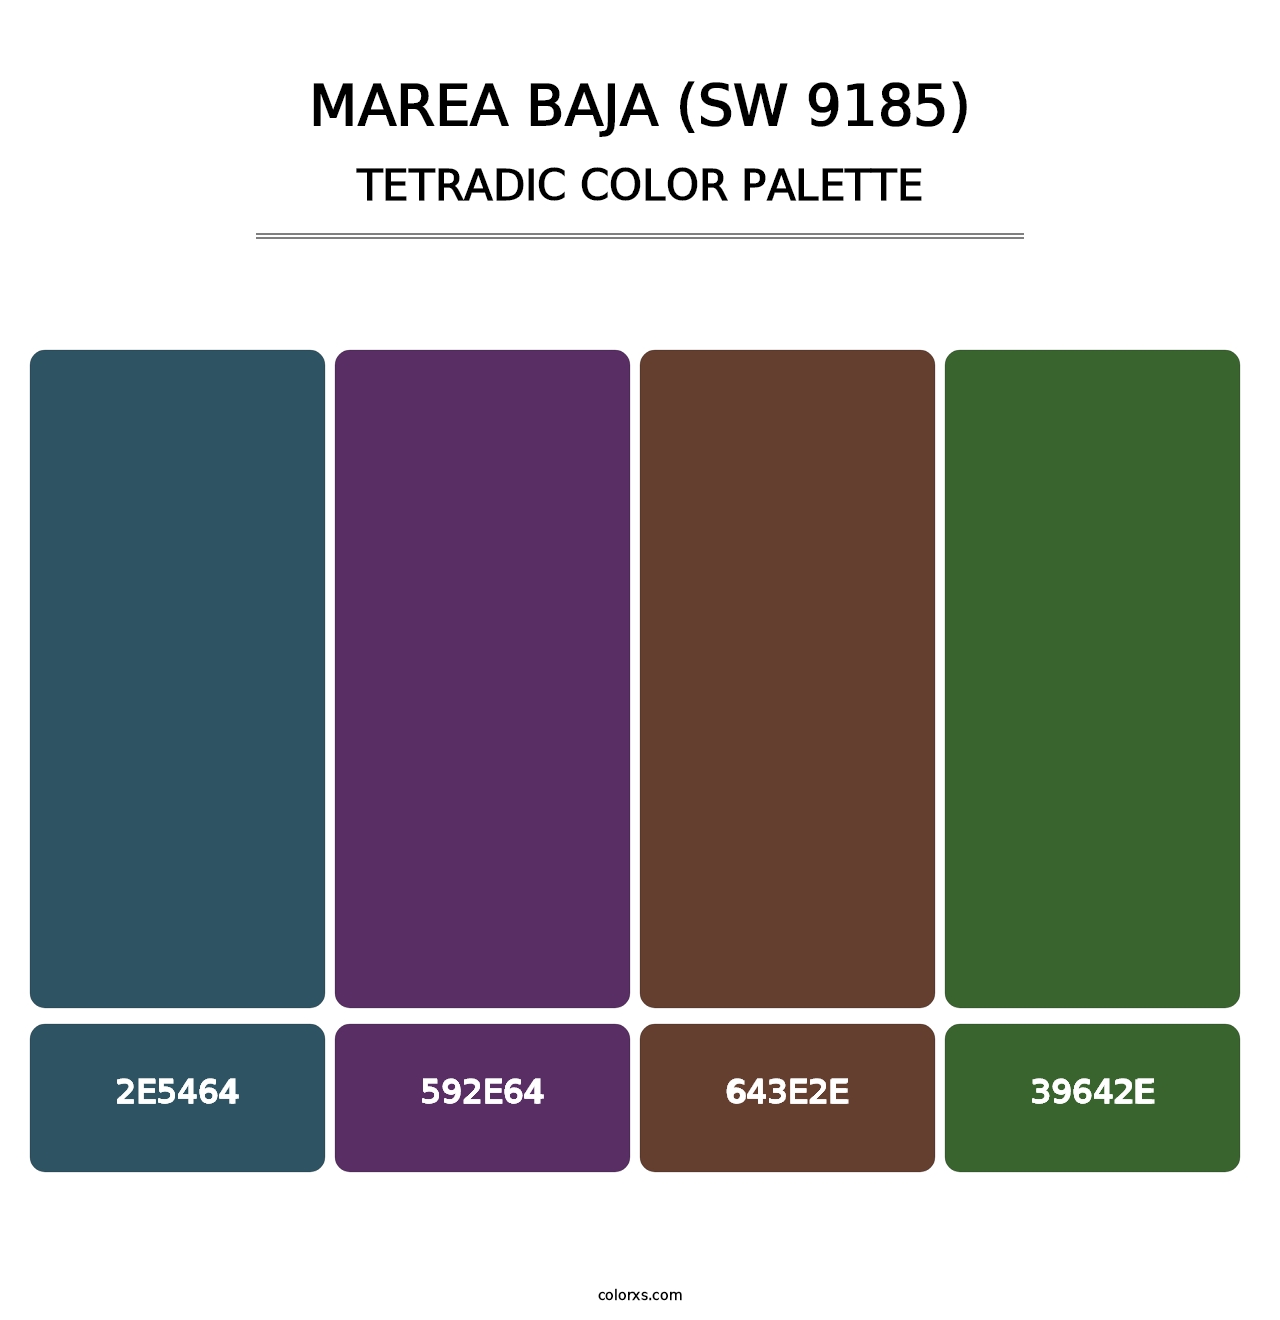 Marea Baja (SW 9185) - Tetradic Color Palette